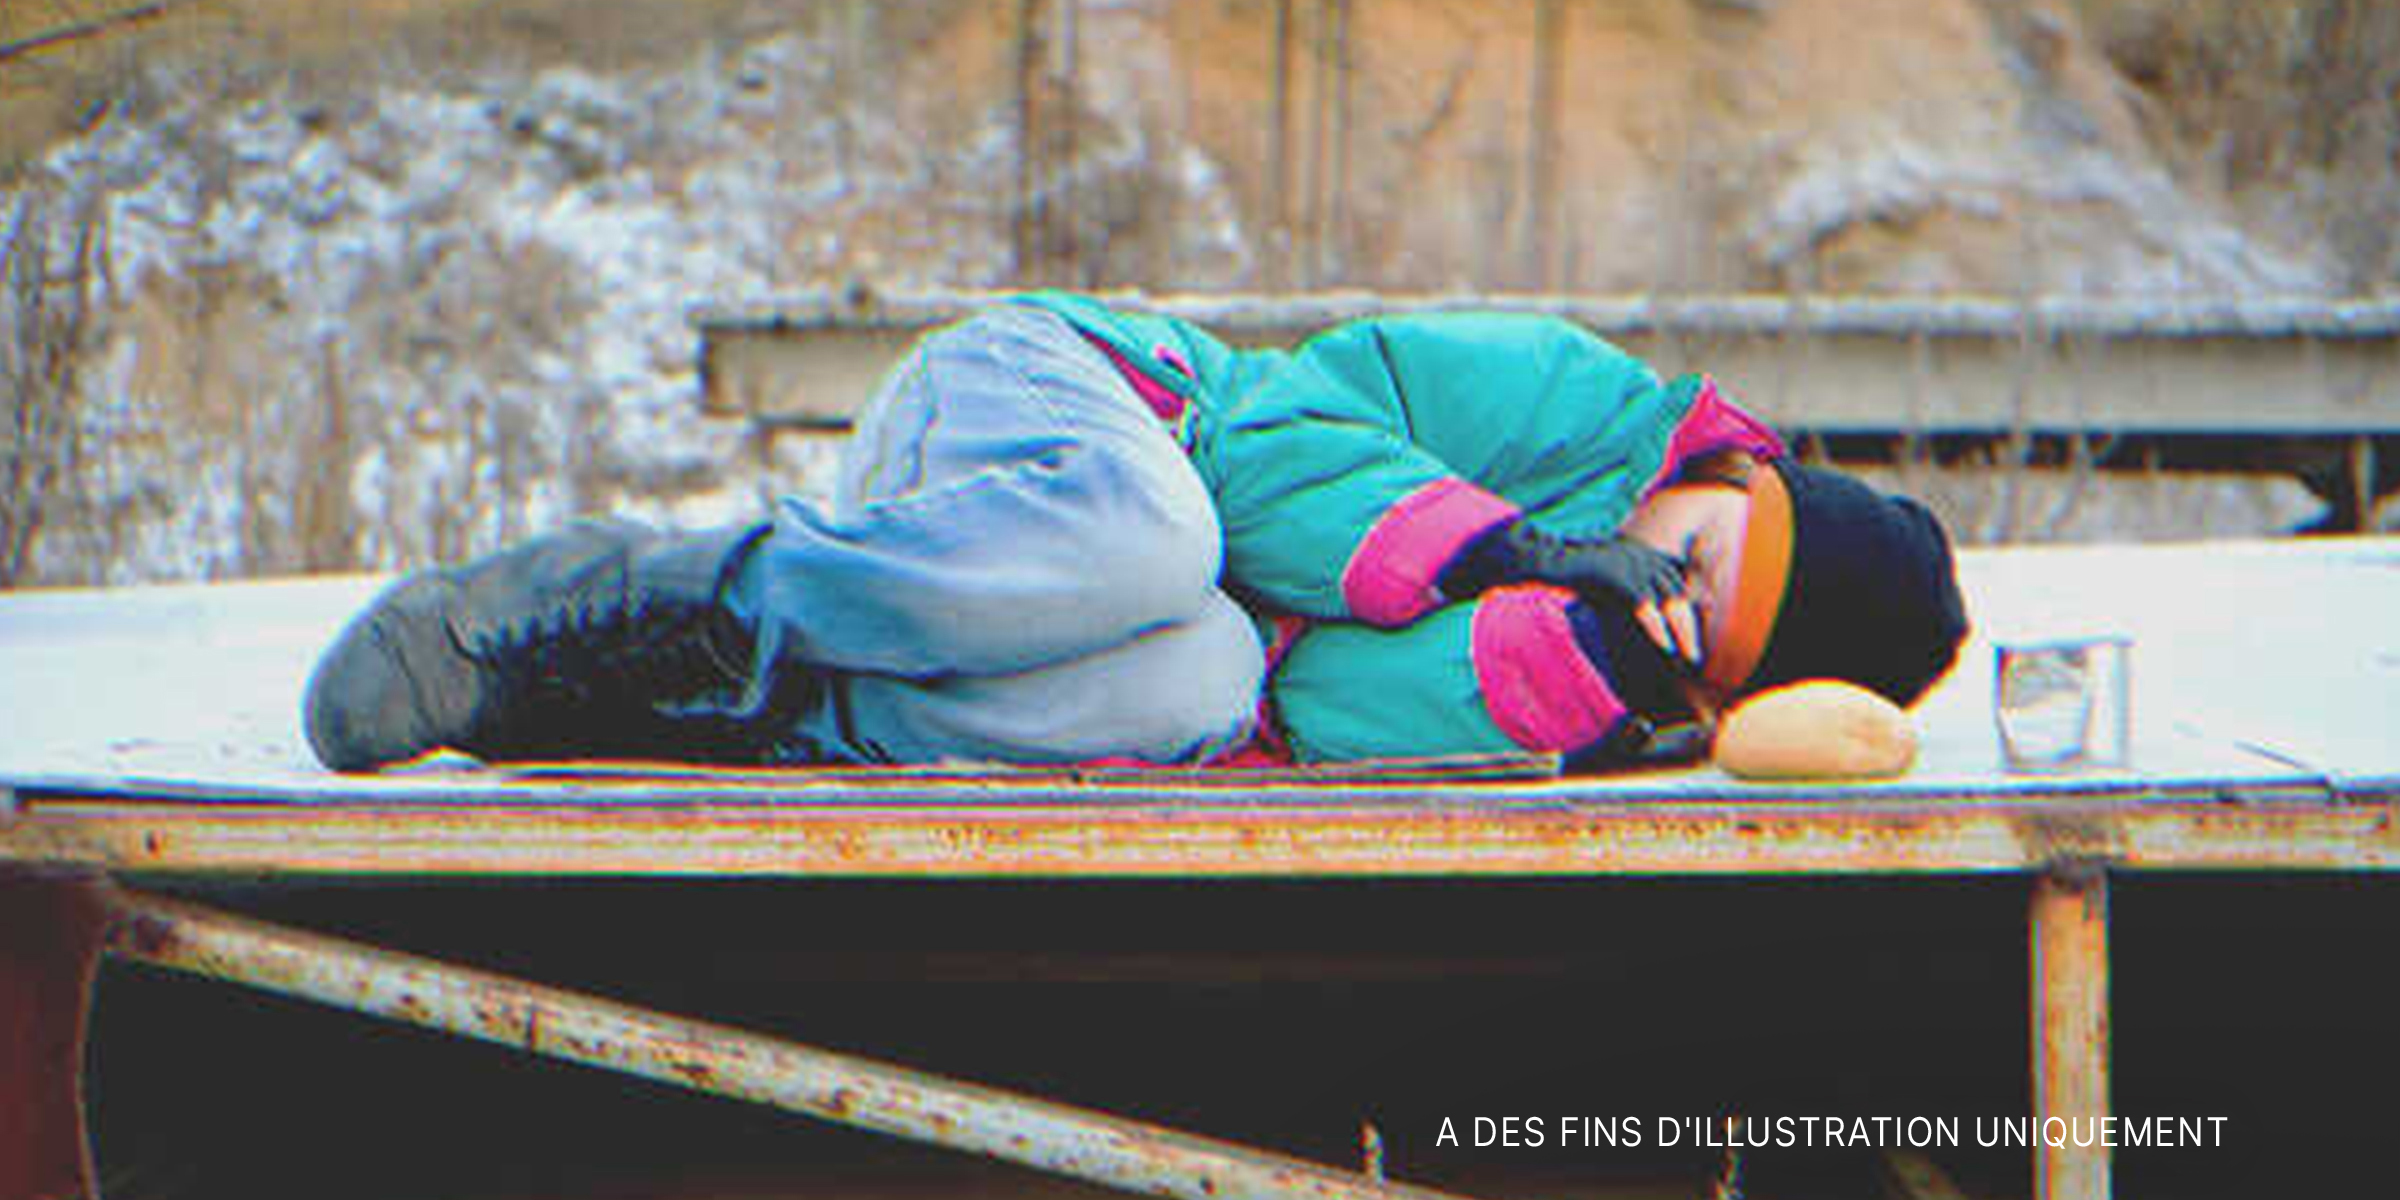 Une femme sans abri dans le froid | Source : Getty Images